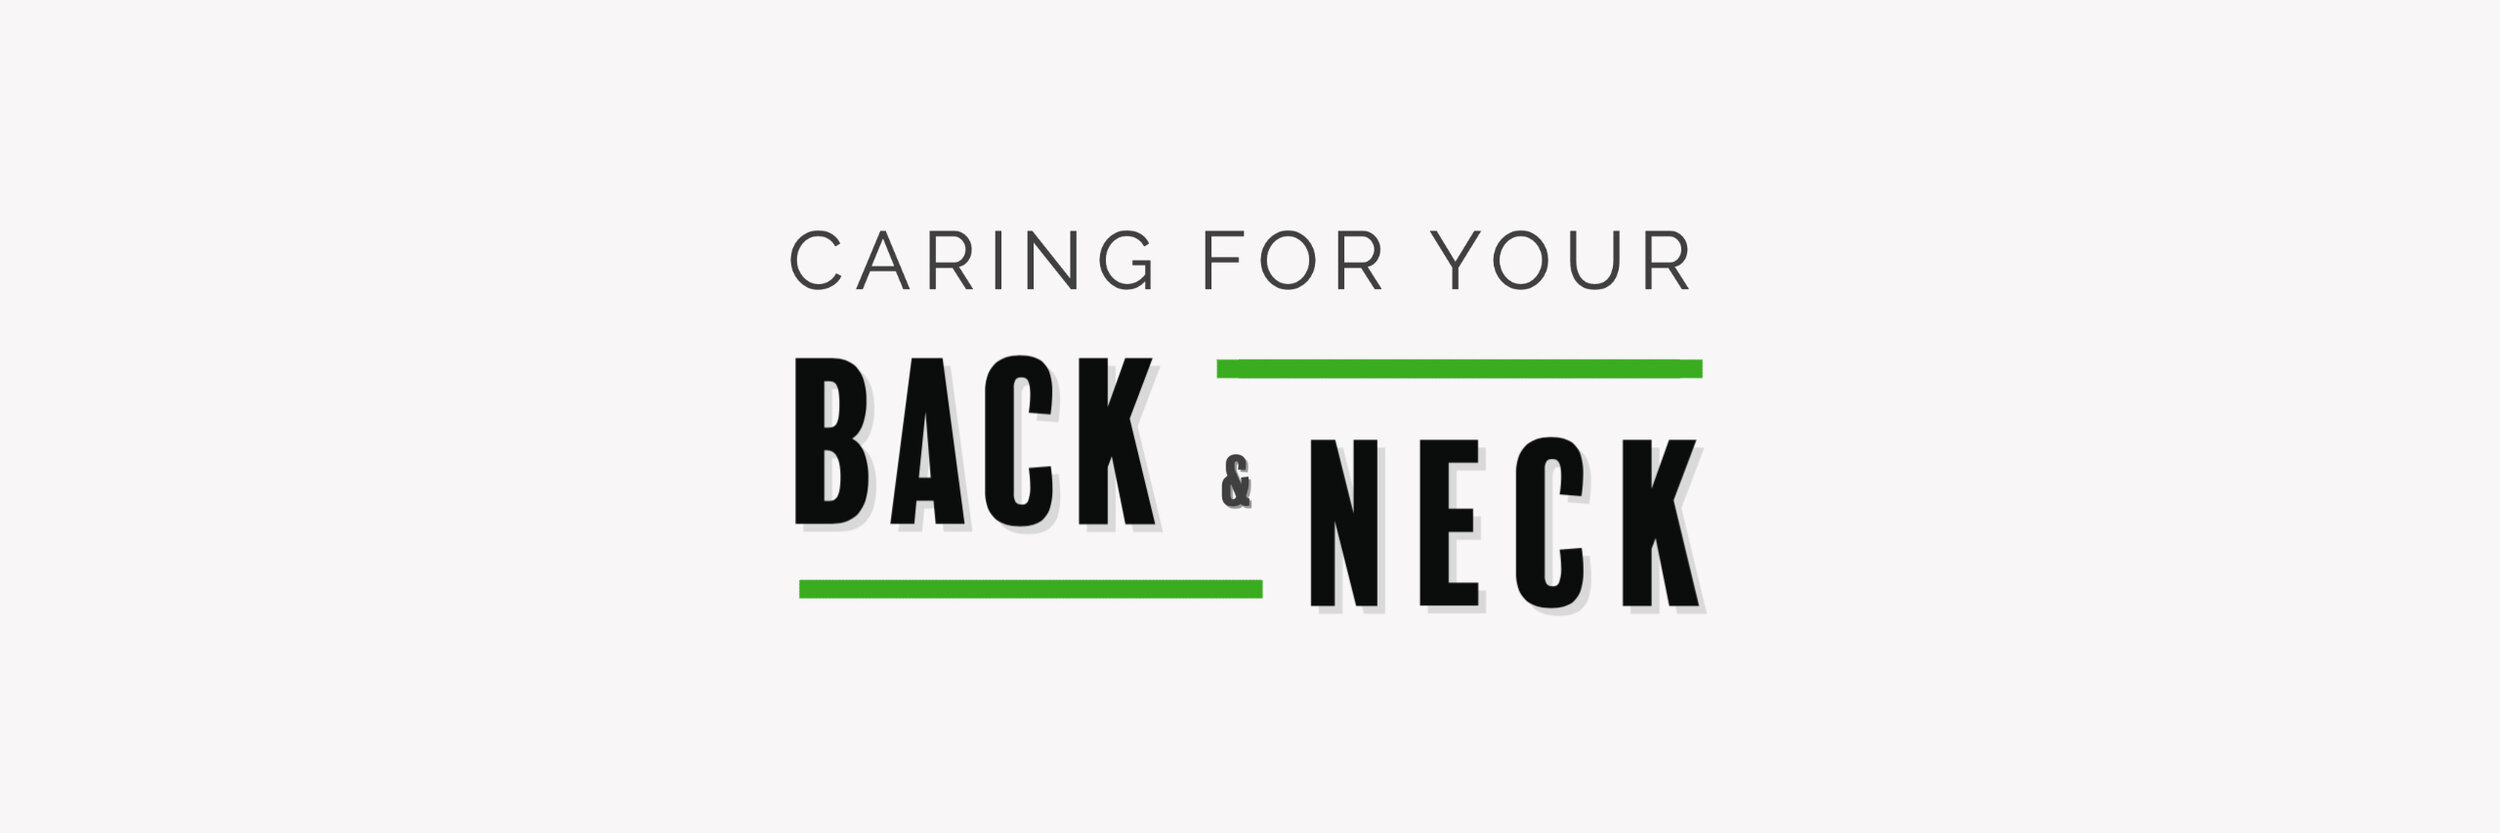 Back & Neck Banner-2.jpg